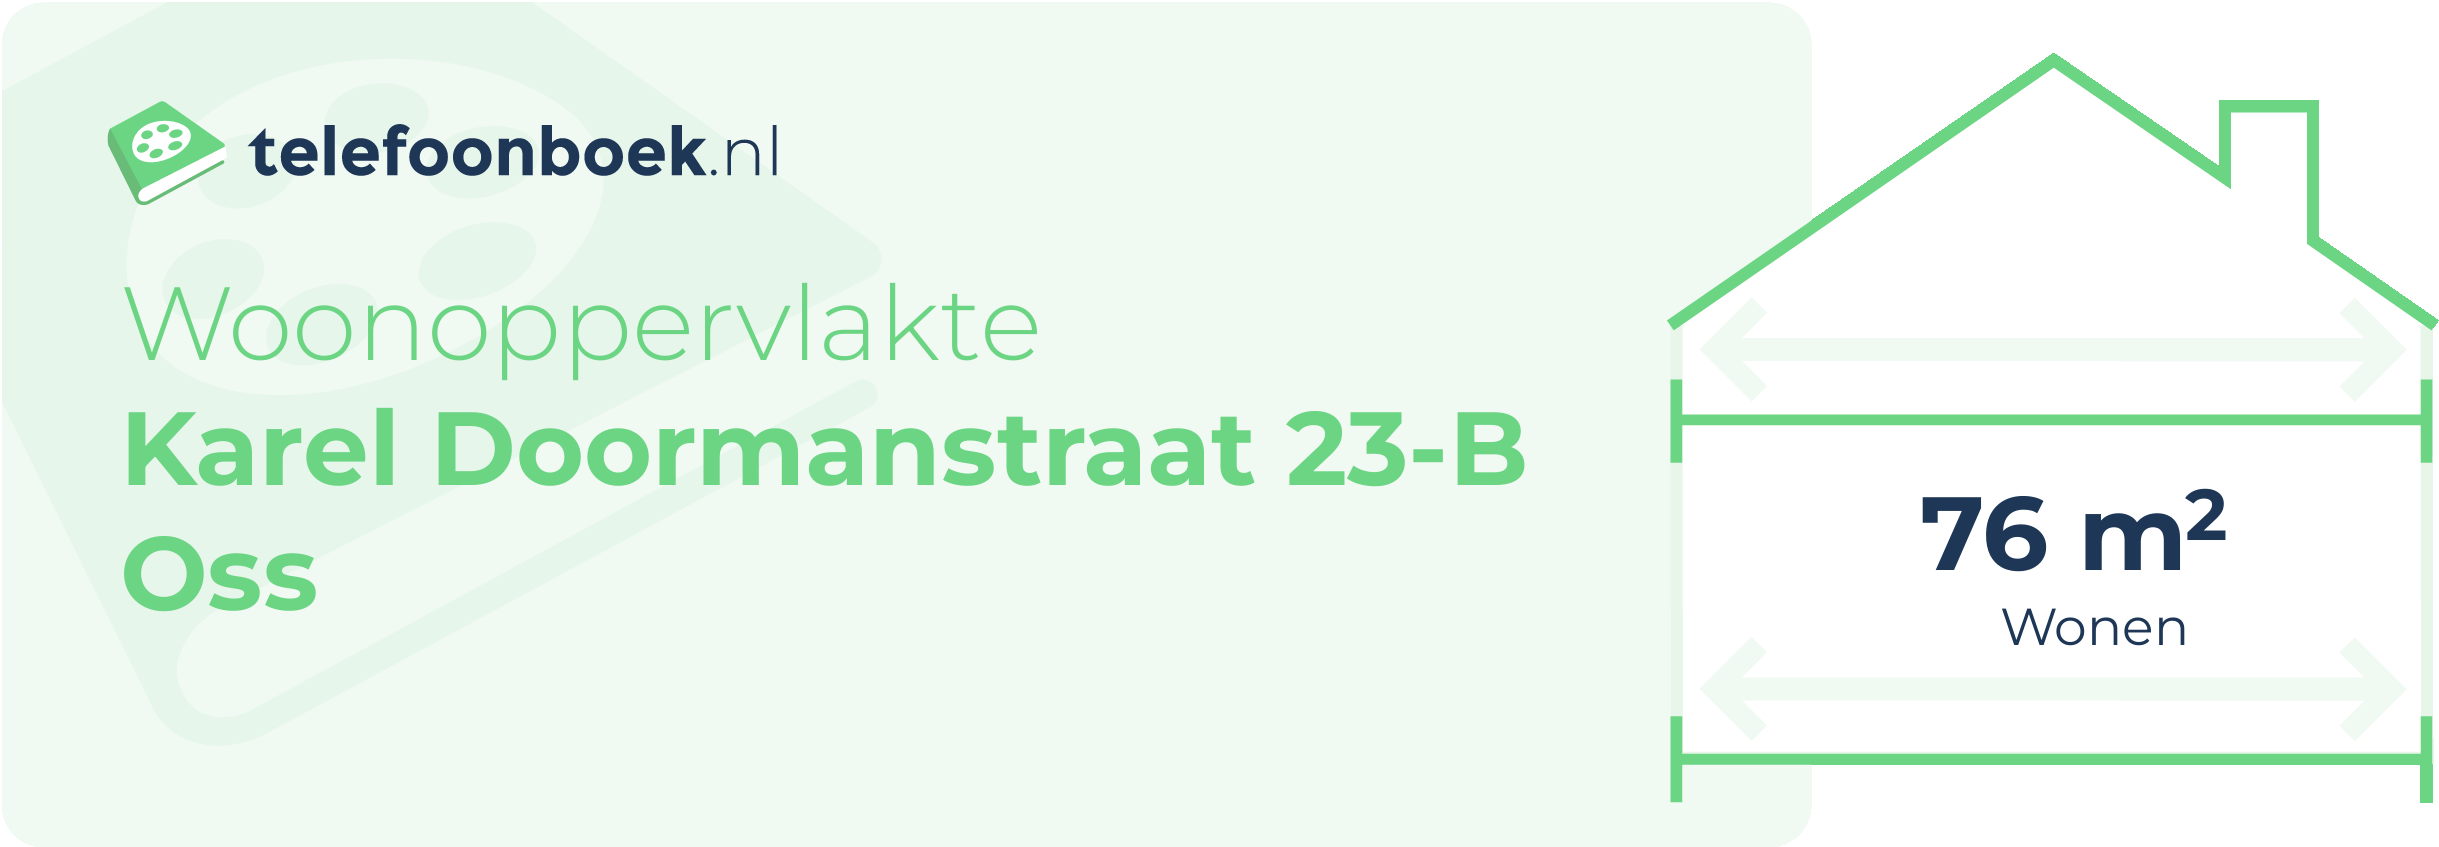 Woonoppervlakte Karel Doormanstraat 23-B Oss